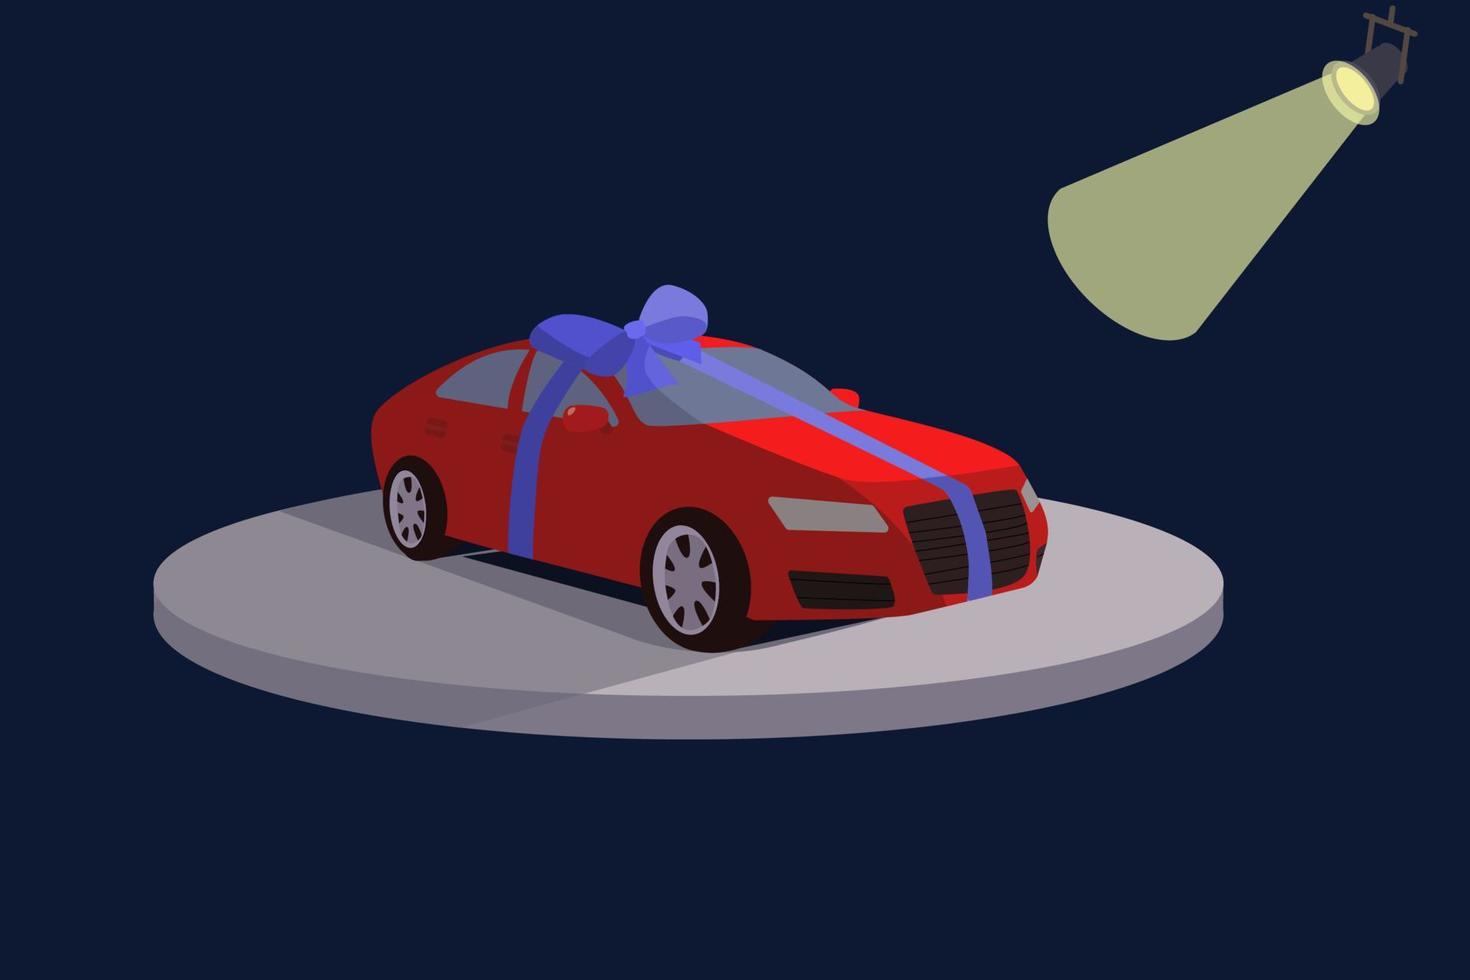 regalo di compleanno per auto, regalo, sorpresa, vincita alla lotteria. macchina rossa legata con un nastro blu. illustrazione vettoriale isolato su sfondo blu.